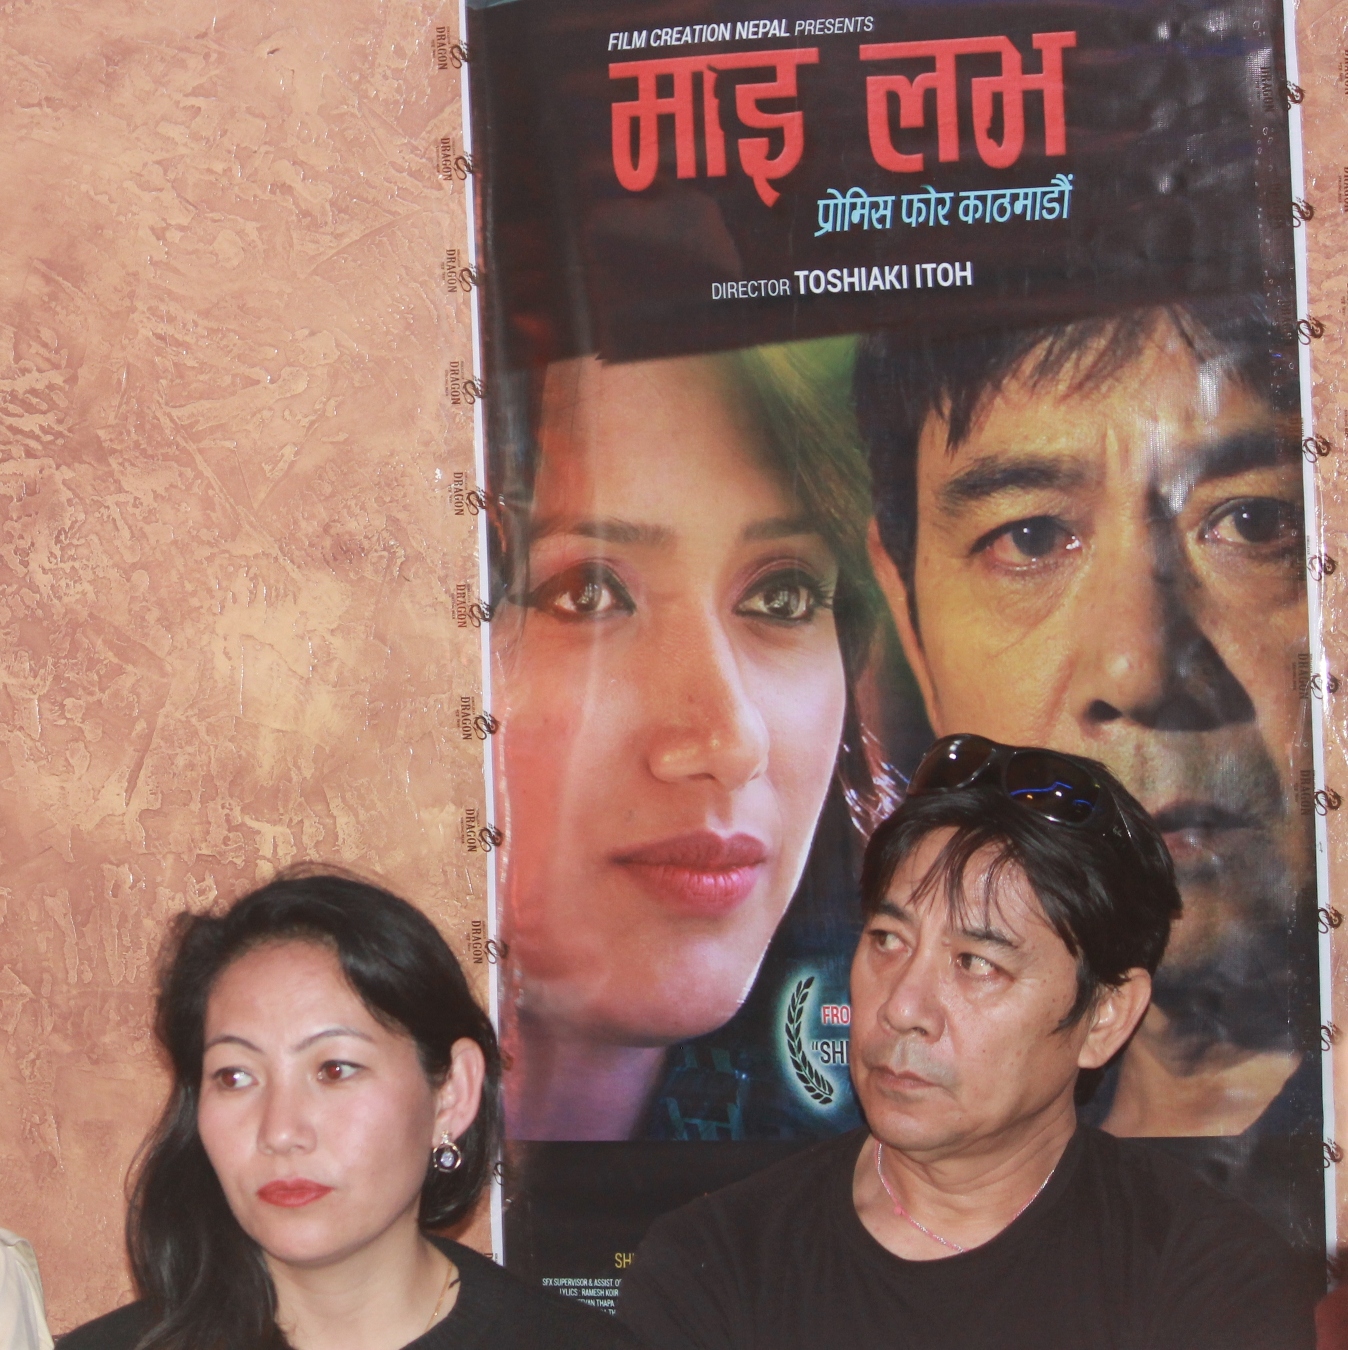 नेपाली चलचित्र माई लभमा धरहरा भत्केको दृश्य